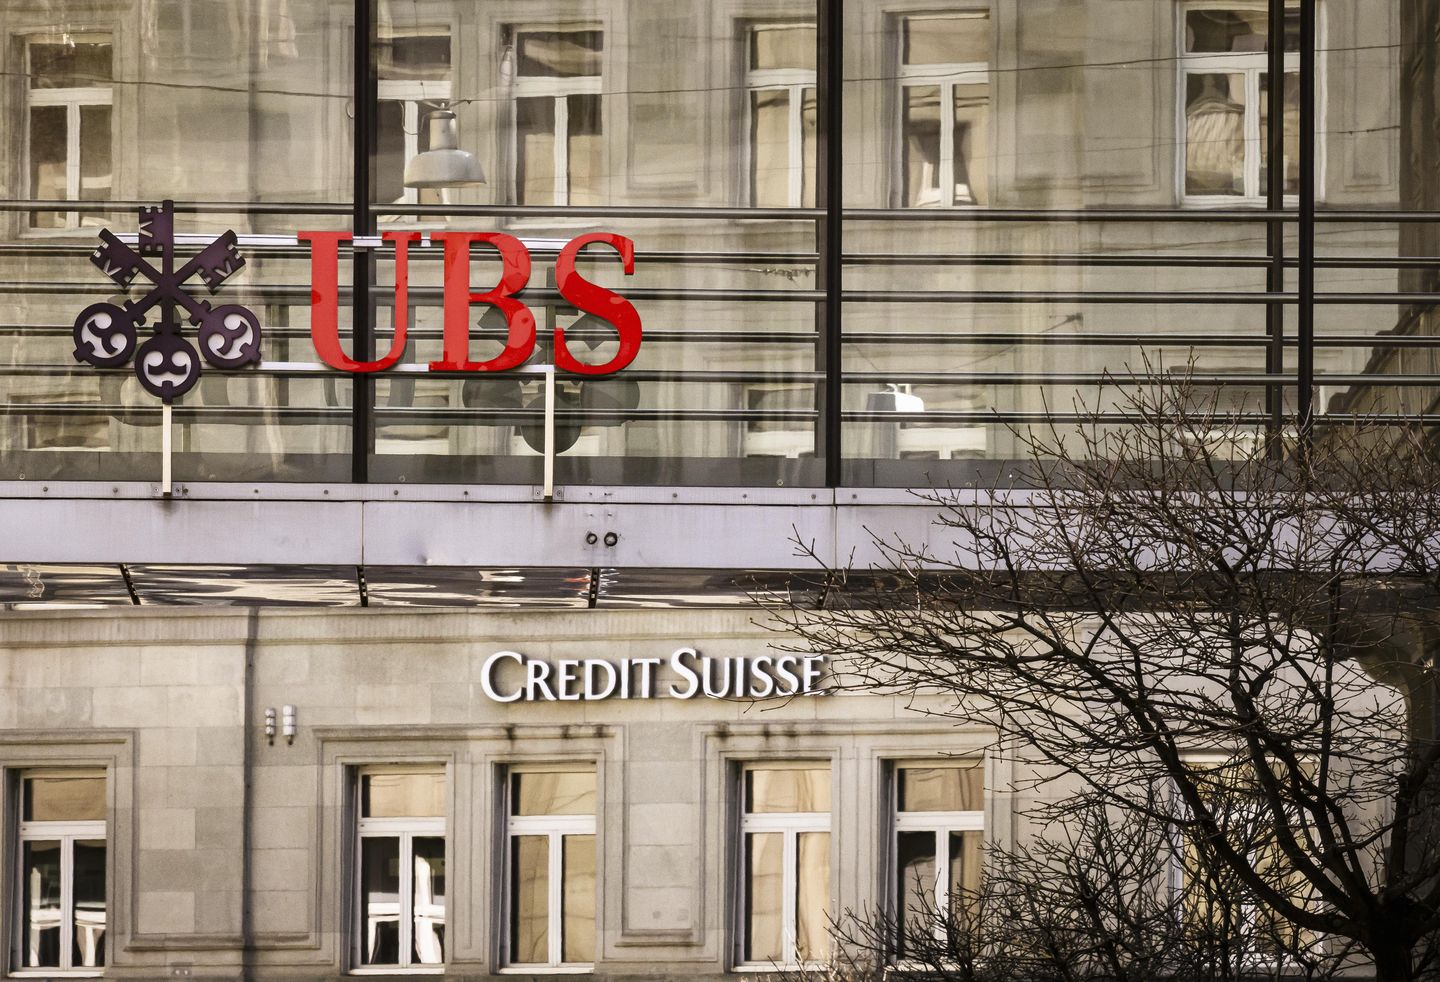 Credit Suisse müşterileri, satıştan sonra hem öfke hem de rahatlama duyguları yaşıyor